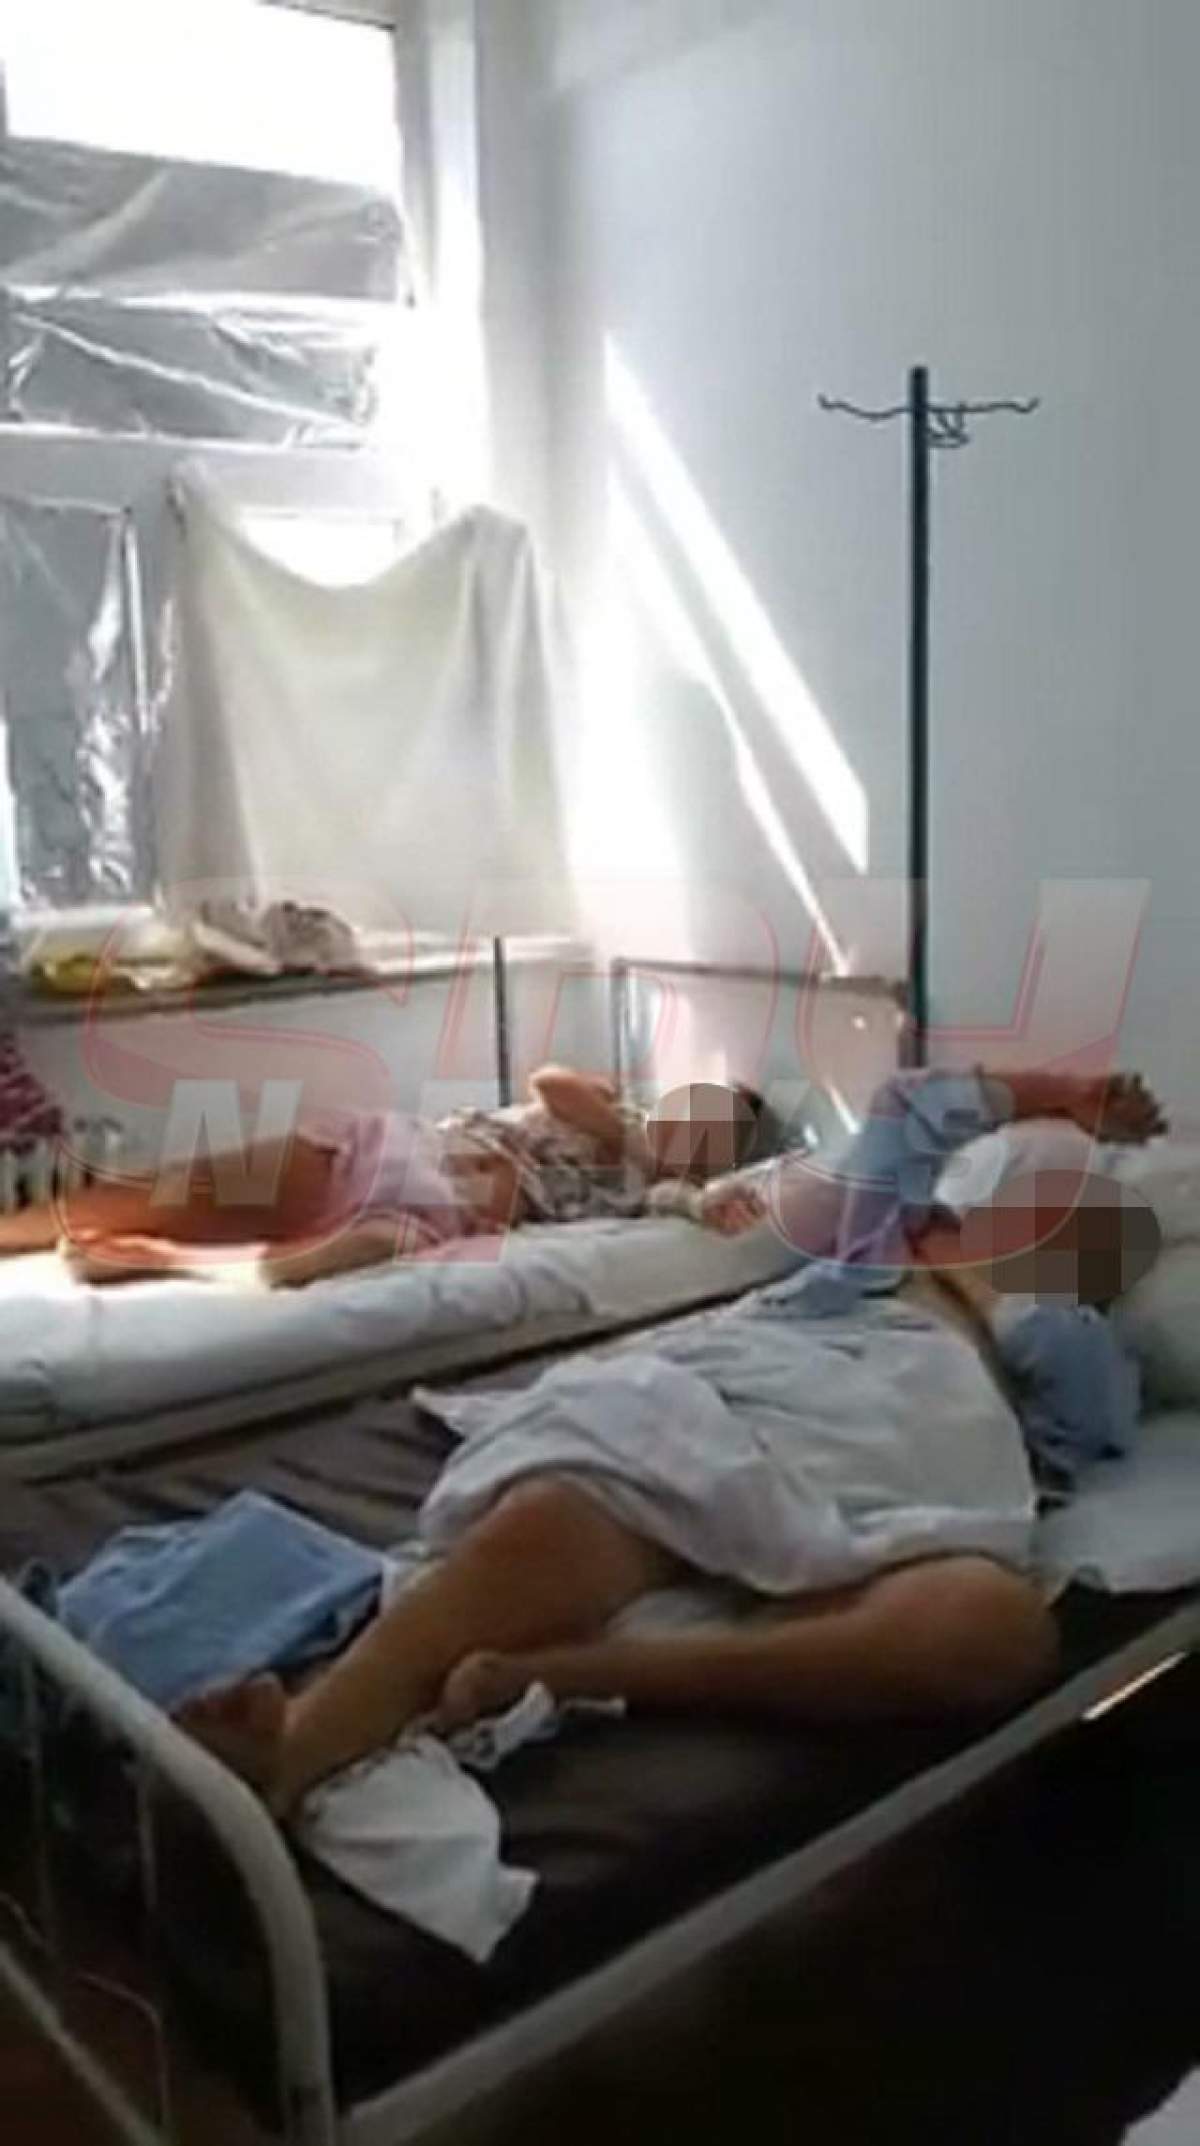 VIDEO / Imagini scandaloase în "Spitalul groazei"! Pentru ce focar de infecţie s-au cheltuit sume colosale!